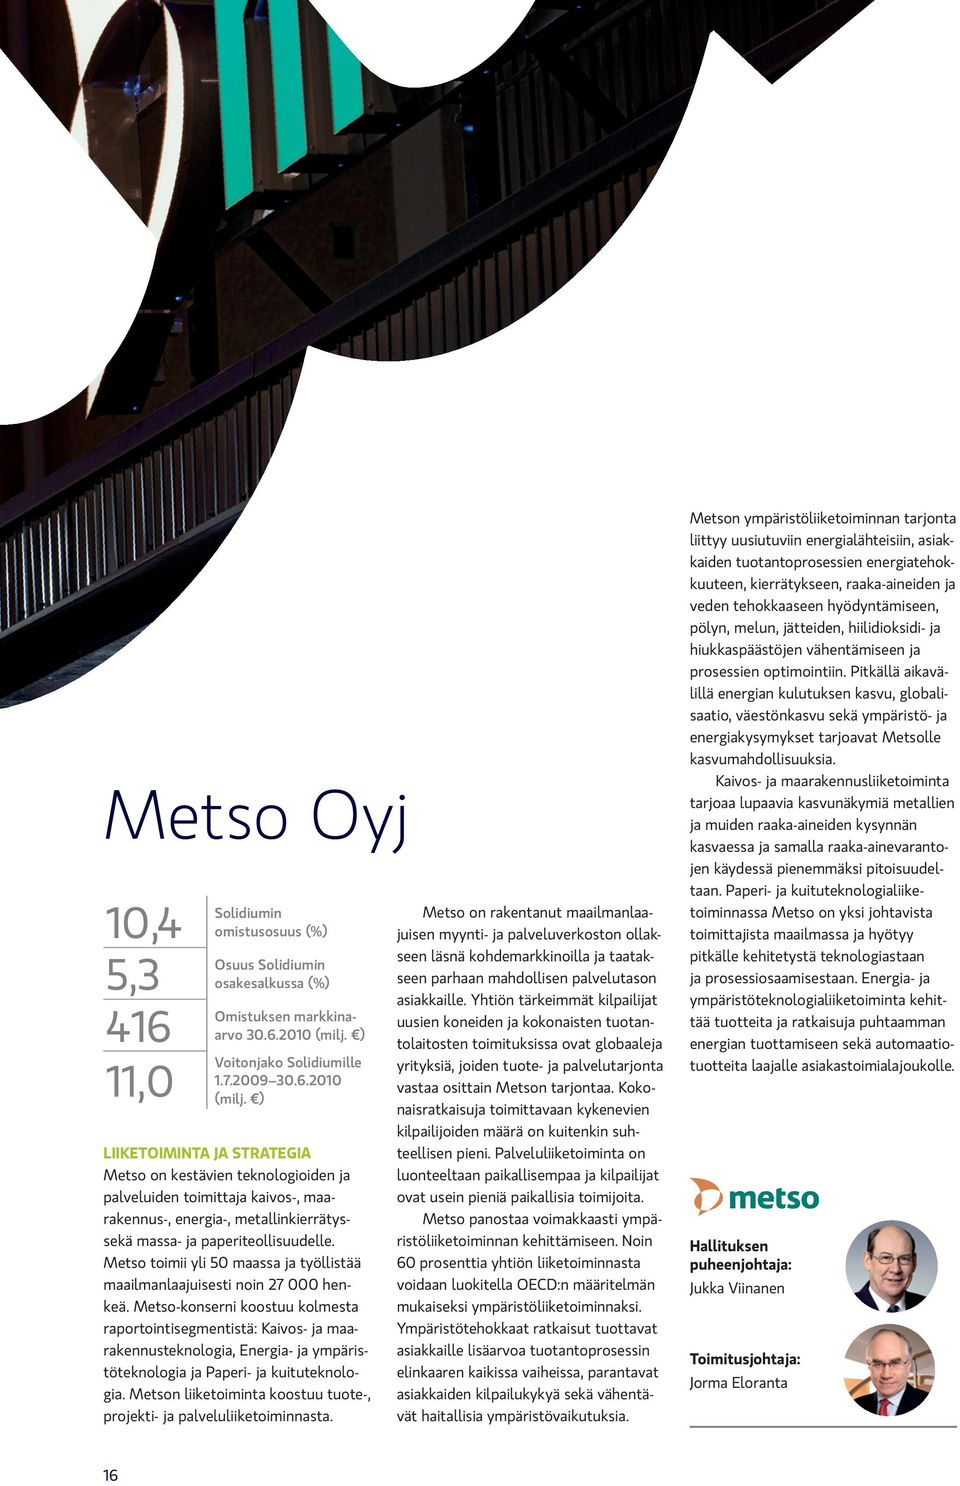 ) LIIKETOIMINTA JA STRATEGIA Metso on kestävien teknologioiden ja palveluiden toimittaja kaivos-, maarakennus-, energia-, metallinkierrätyssekä massa- ja paperiteollisuudelle.